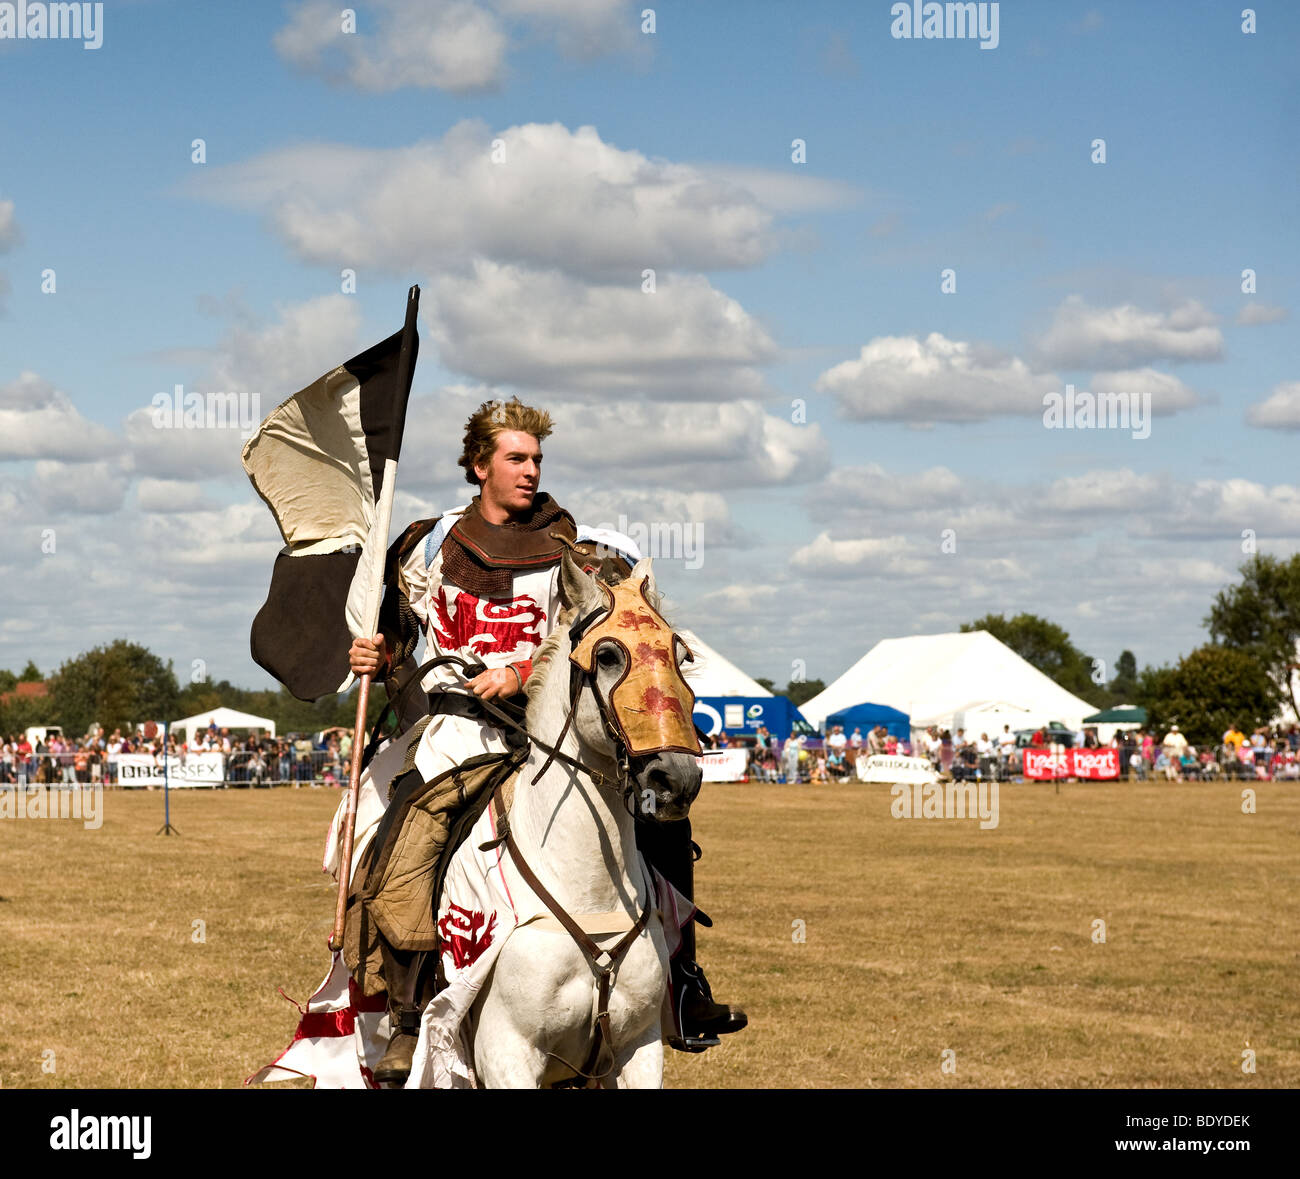 Ein Ritter reiten ein Pferd in einem Turnier in einem Land zeigen. Stockfoto